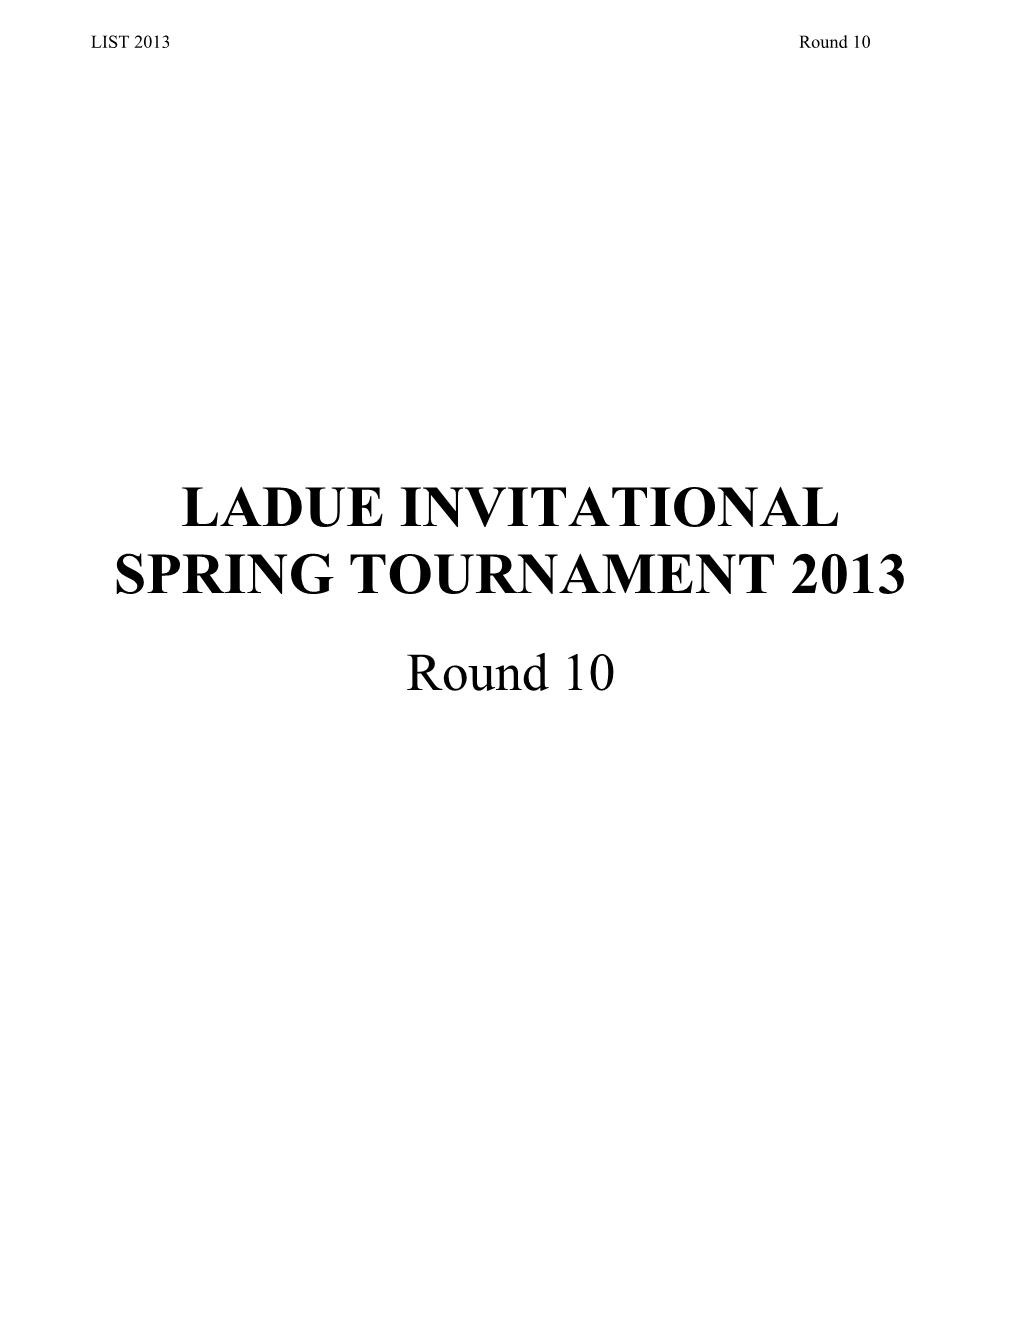 Ladue Invitational Spring Tournament 2013